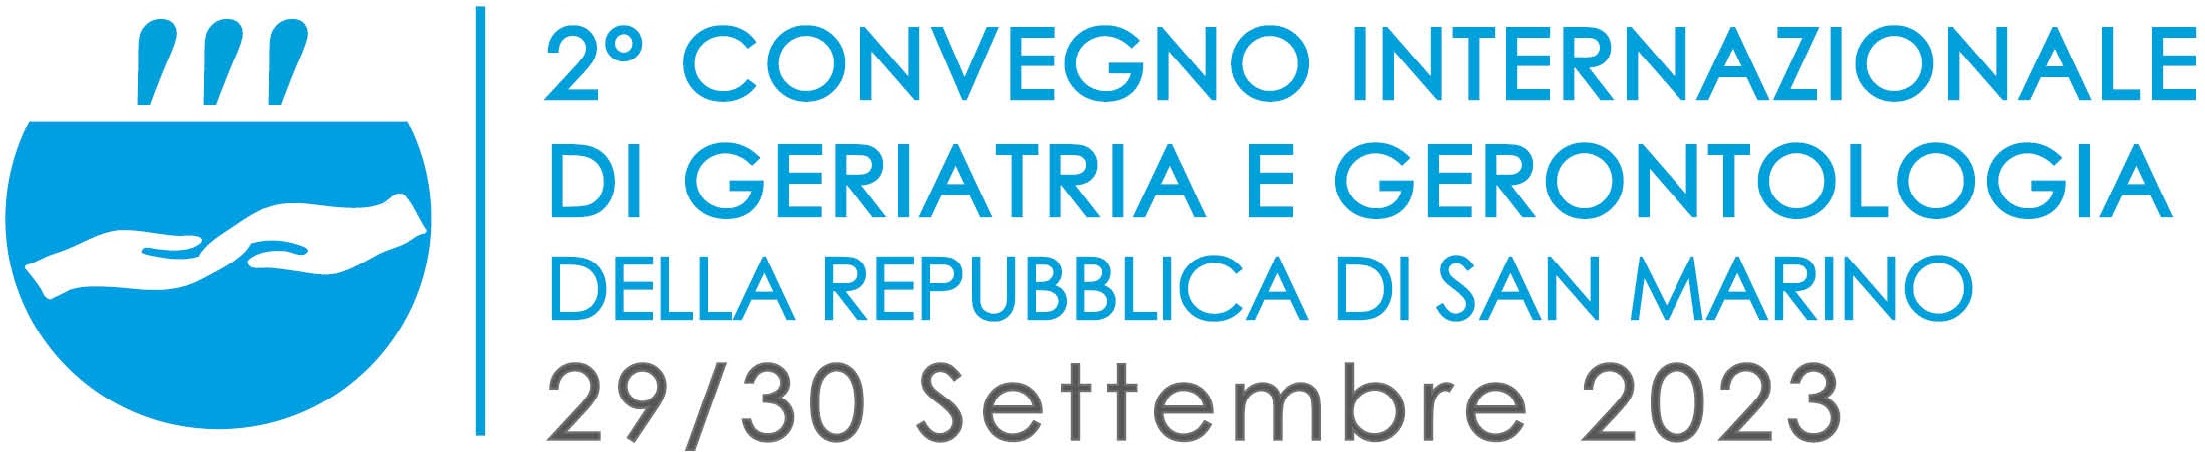 Convegno Internazionale ASGG 2023 San Marino